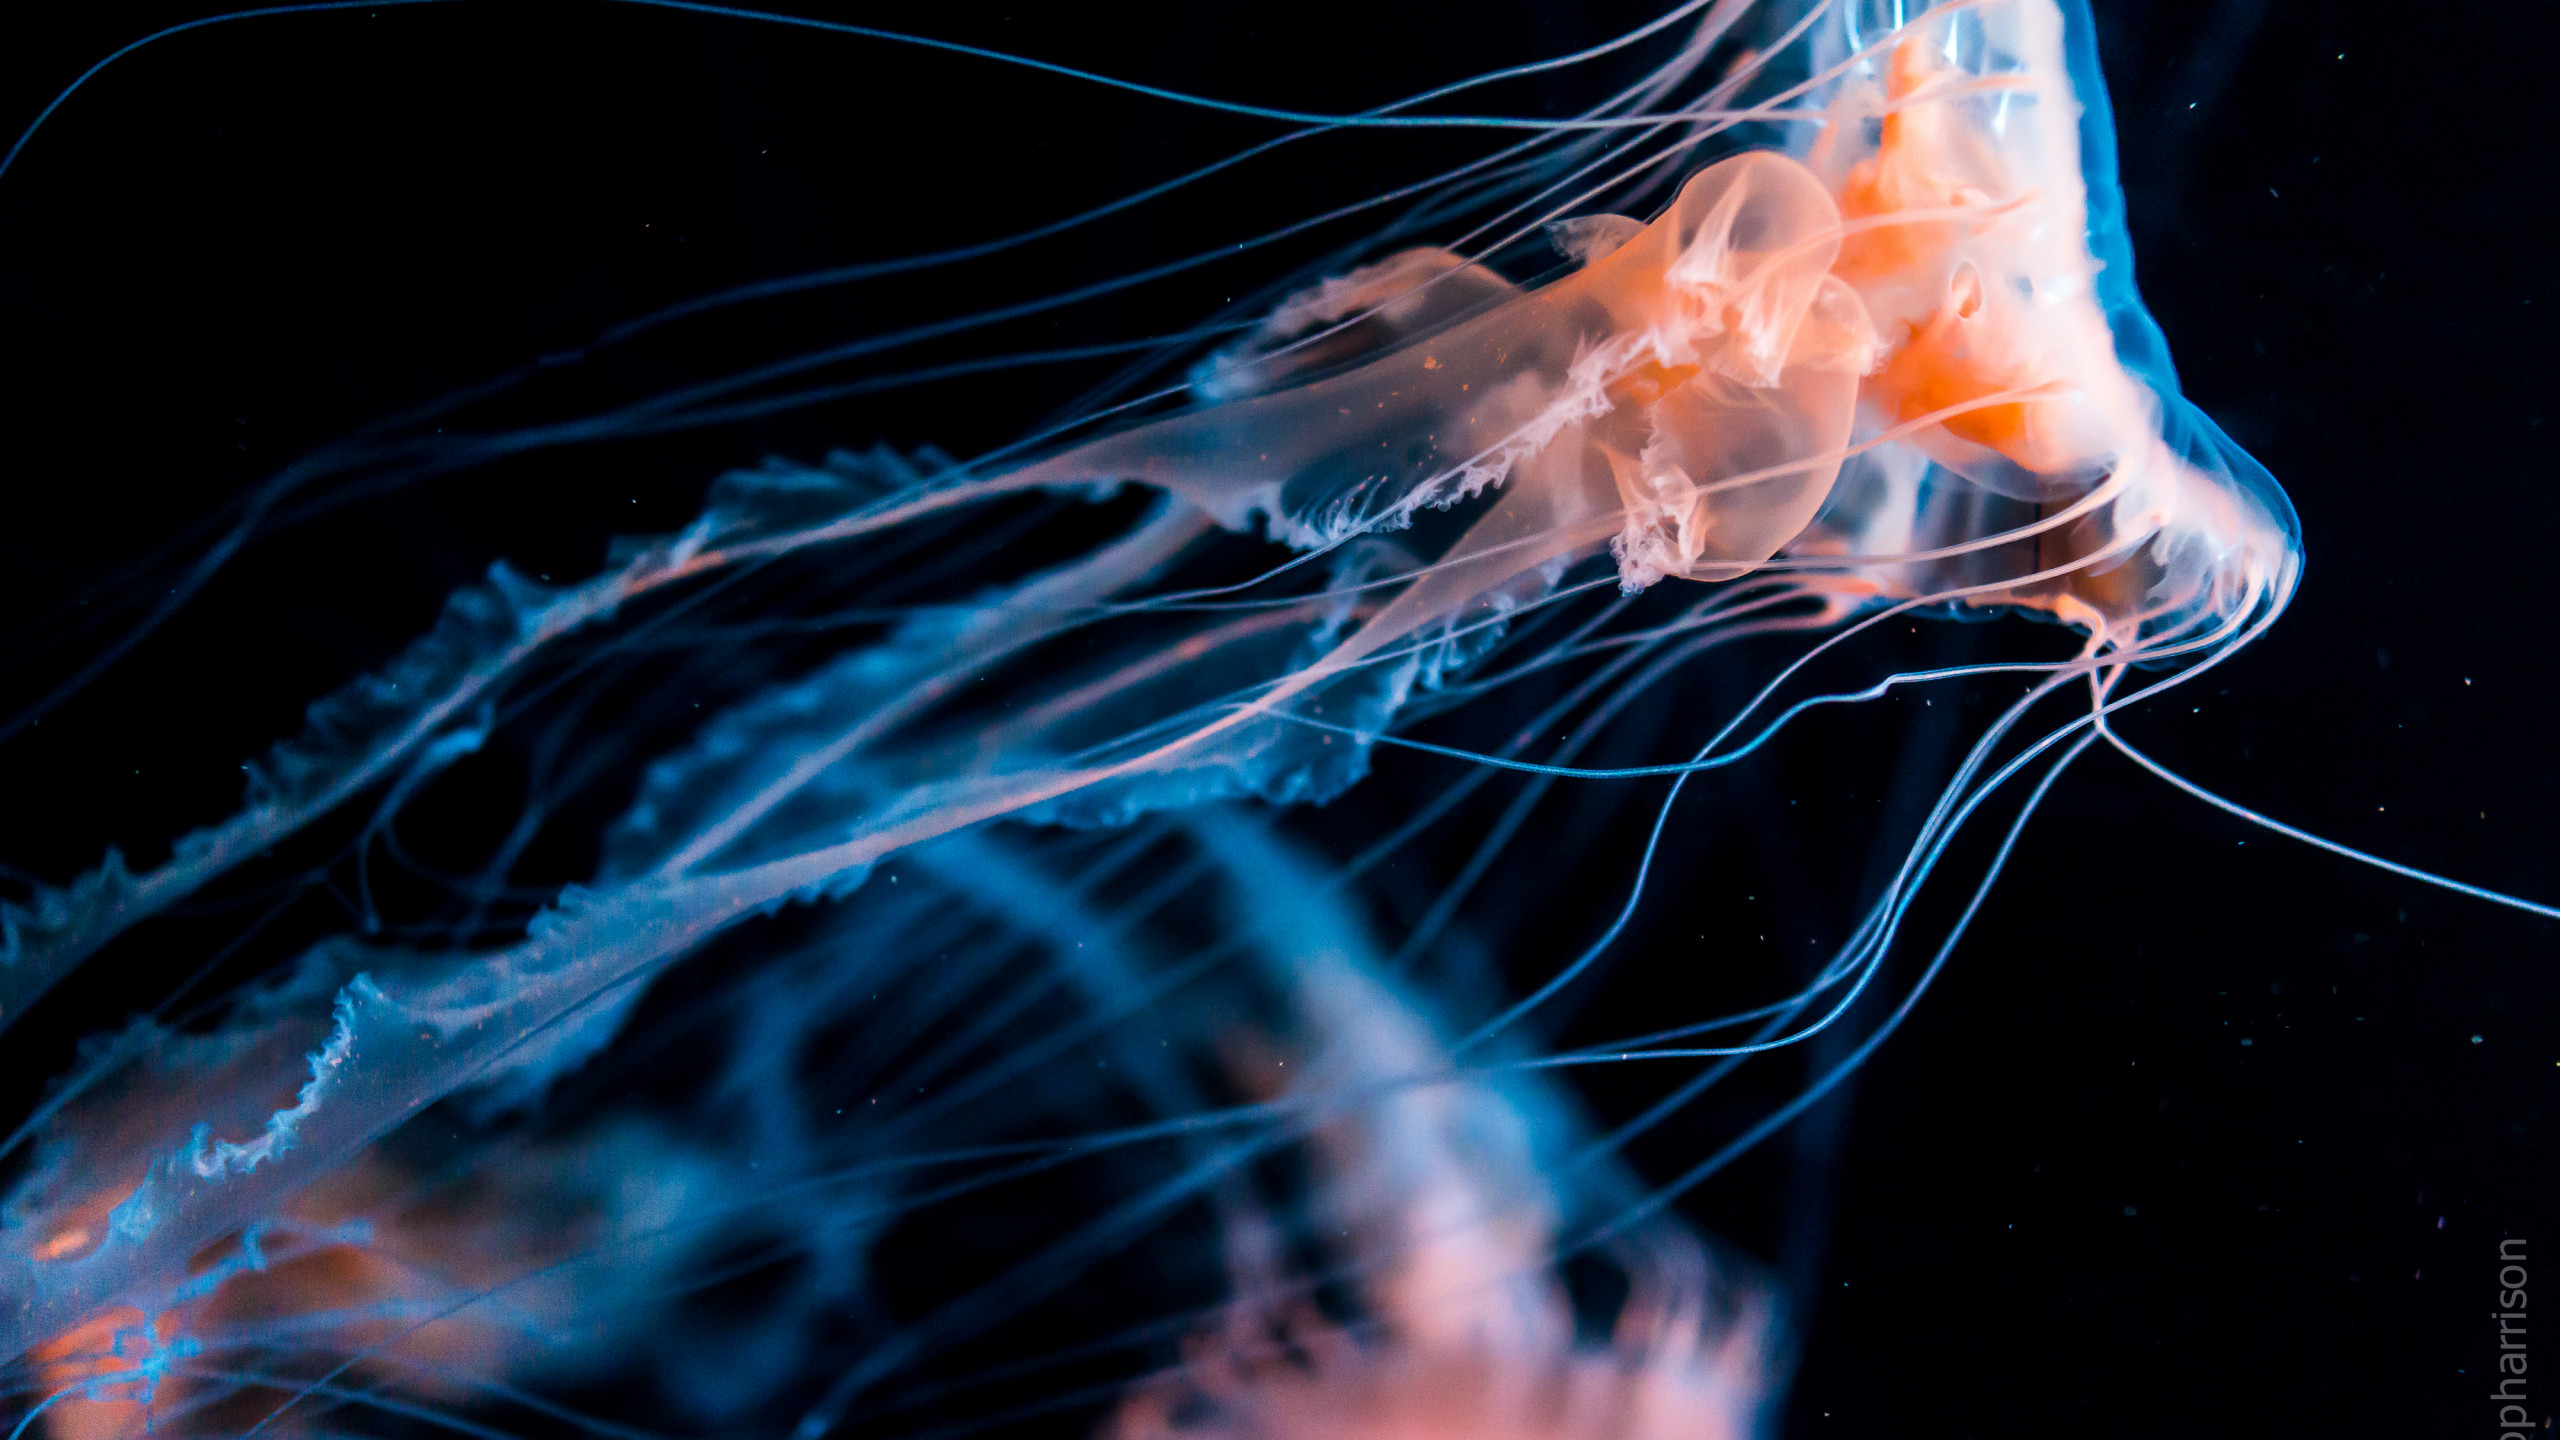 jellyfish aquarium 4k